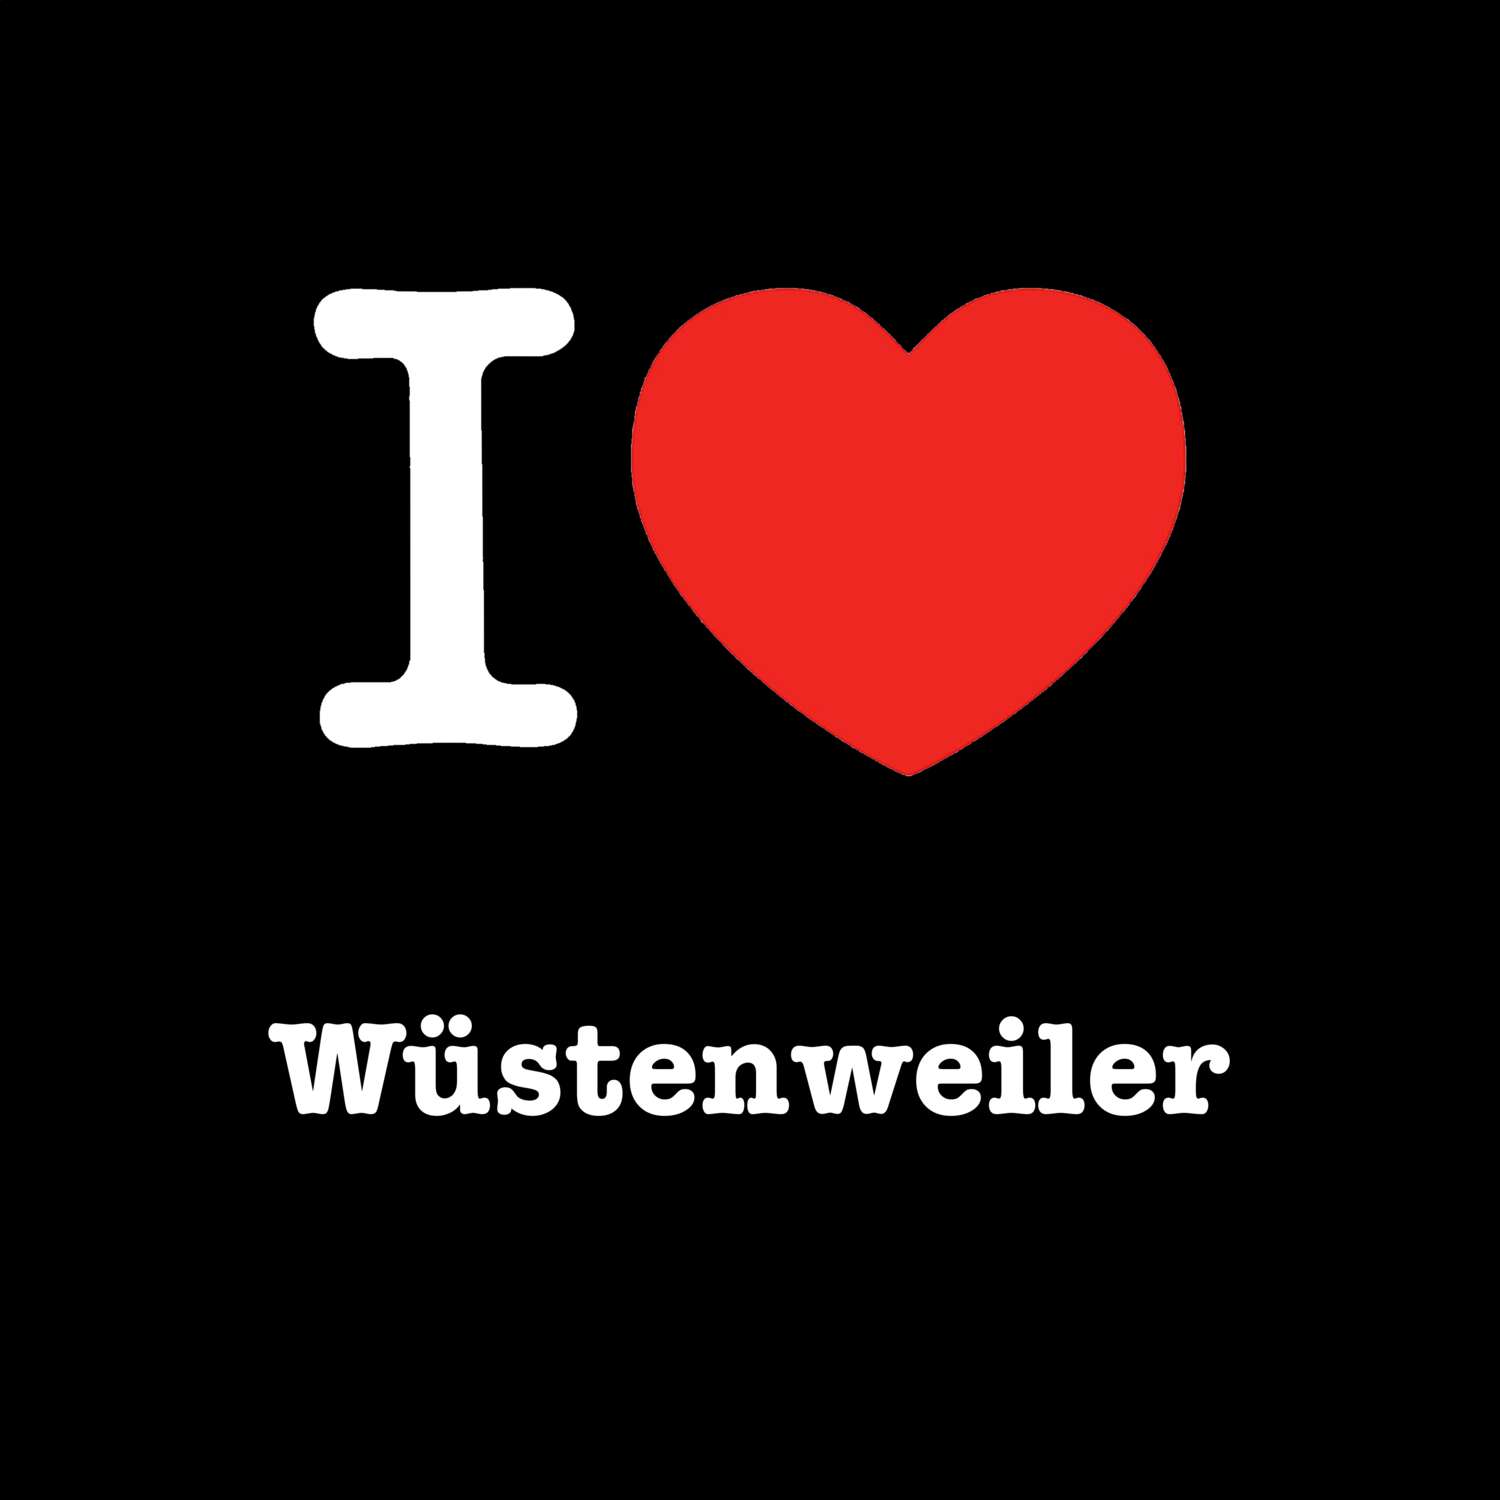 Wüstenweiler T-Shirt »I love«